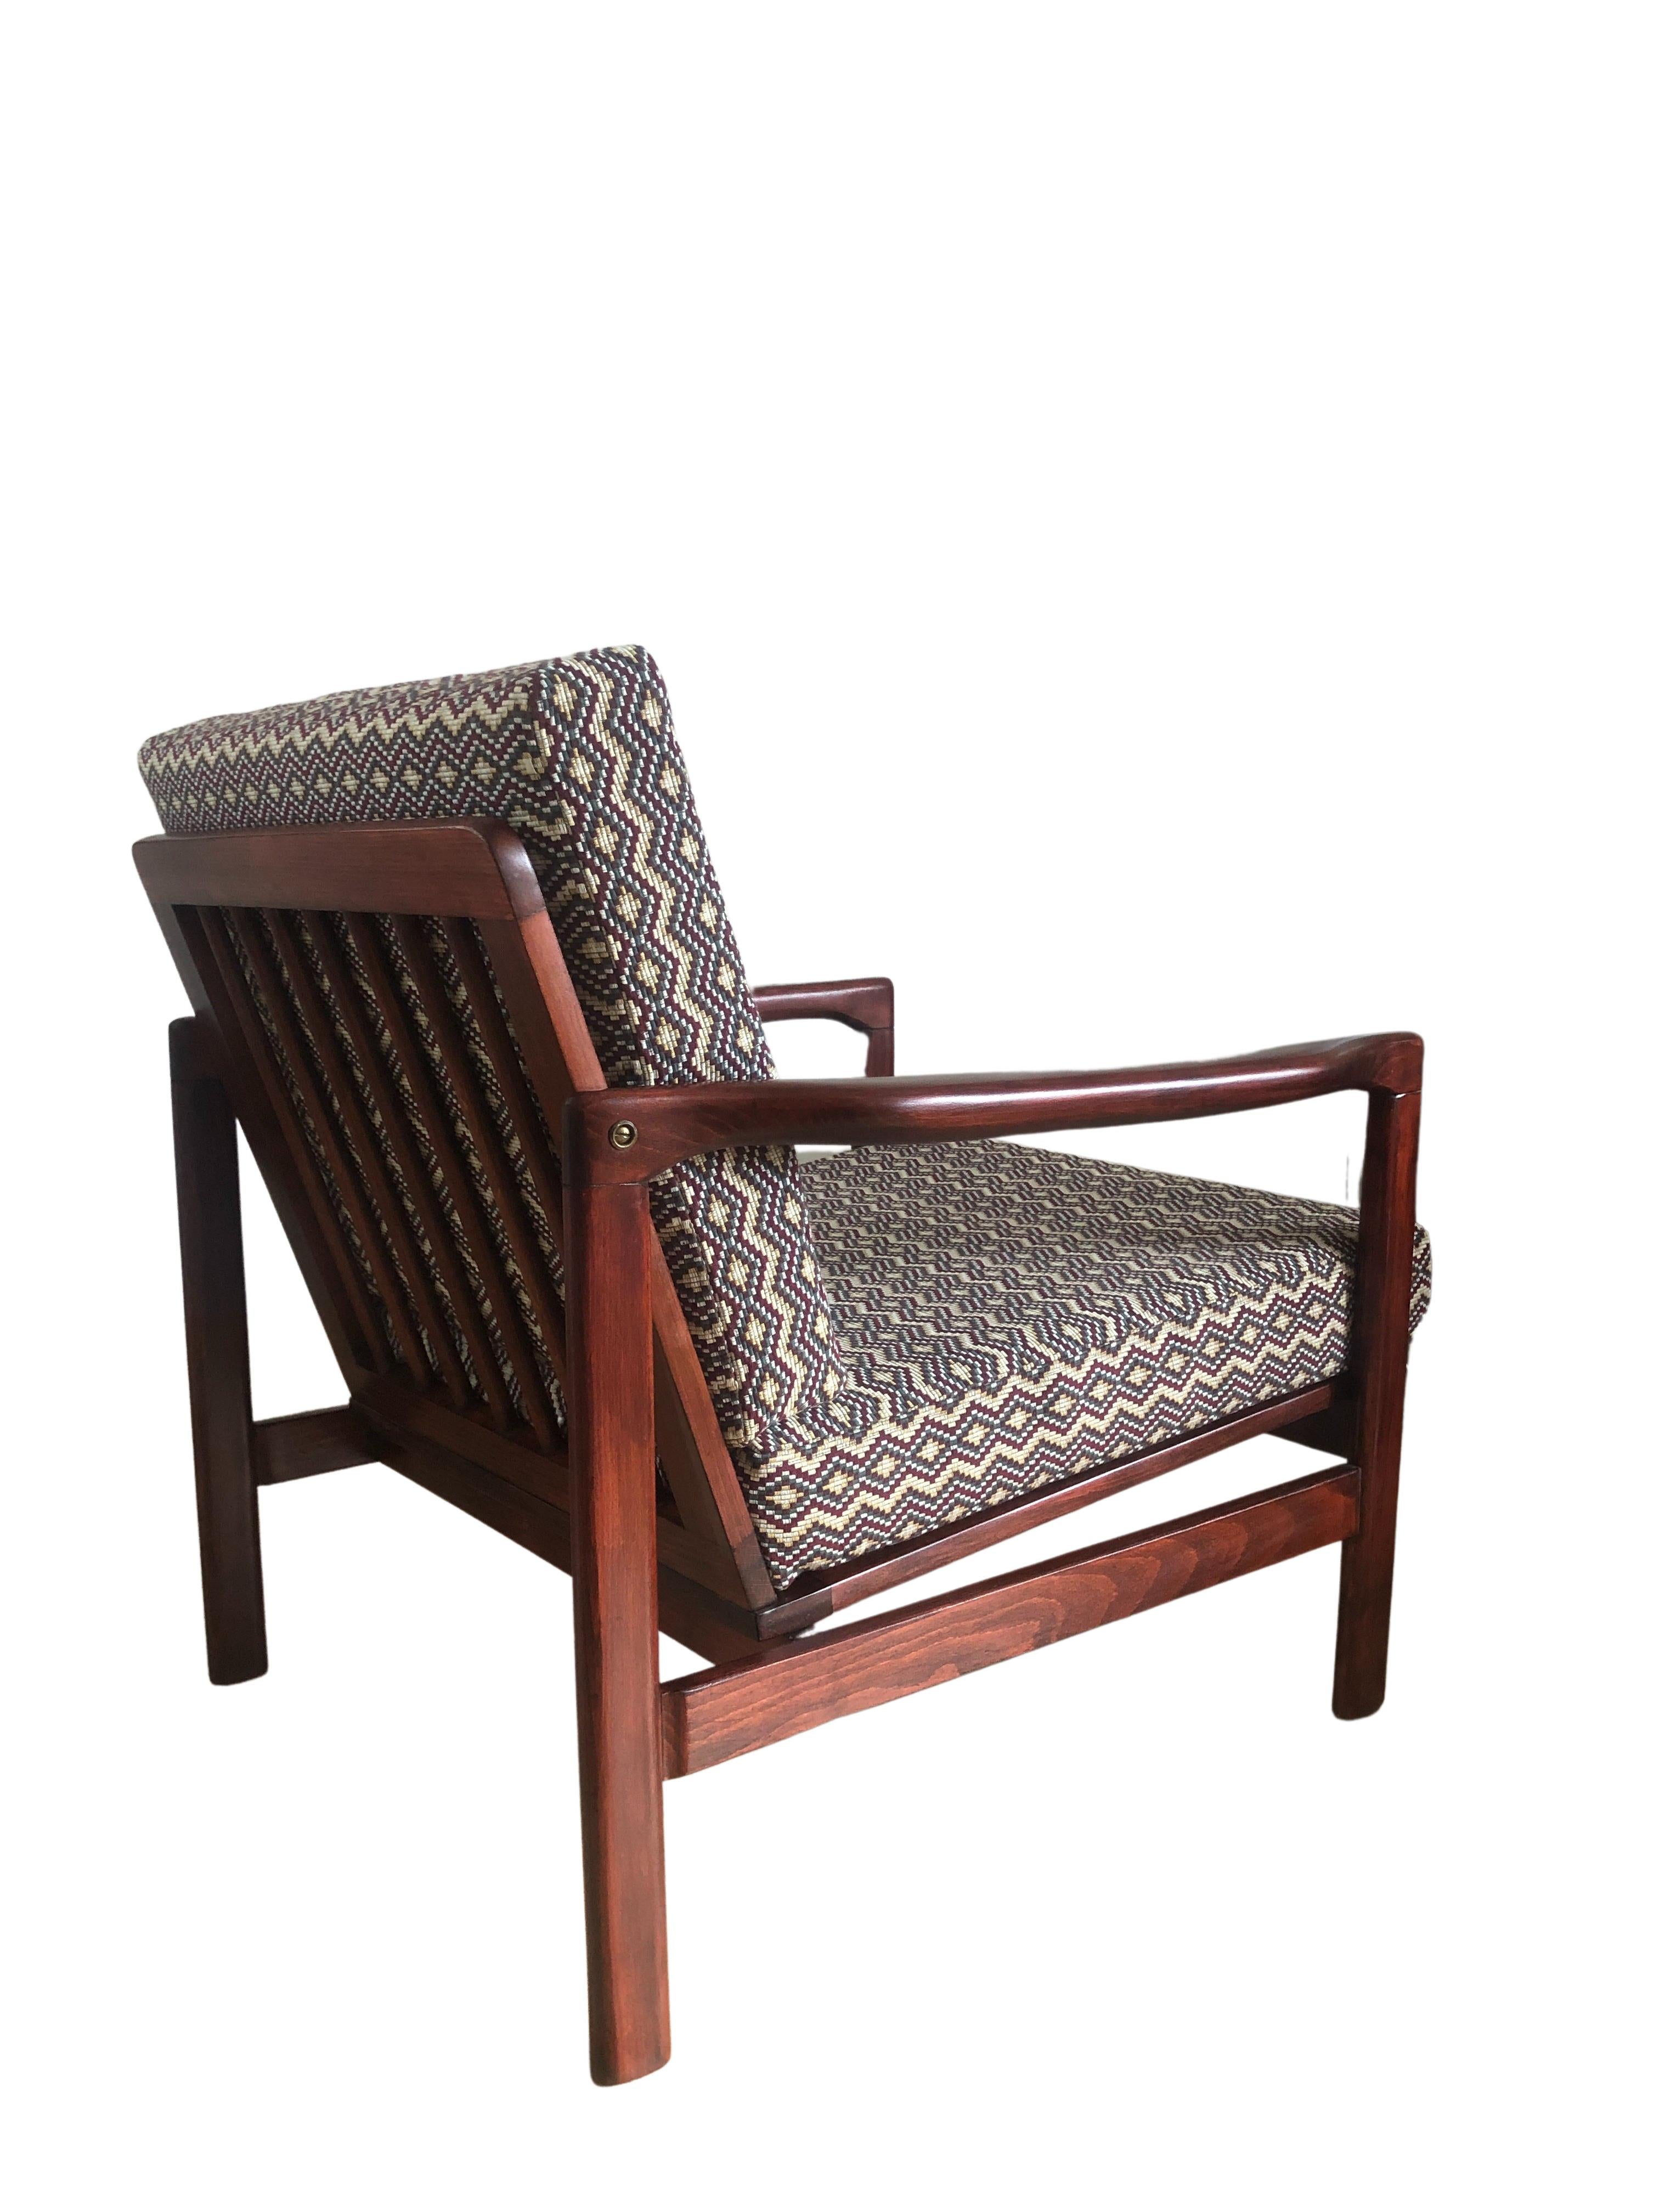 Das Set aus zwei Sesseln, Modell B-7752, entworfen von Zenon Baczyk, wurde in den 1960er Jahren von Swarzedzkie Fabryki Mebli in Polen hergestellt. 

Die Struktur ist aus tiefbraunem Buchenholz gefertigt und mit einem seidenmatten Lack versehen.